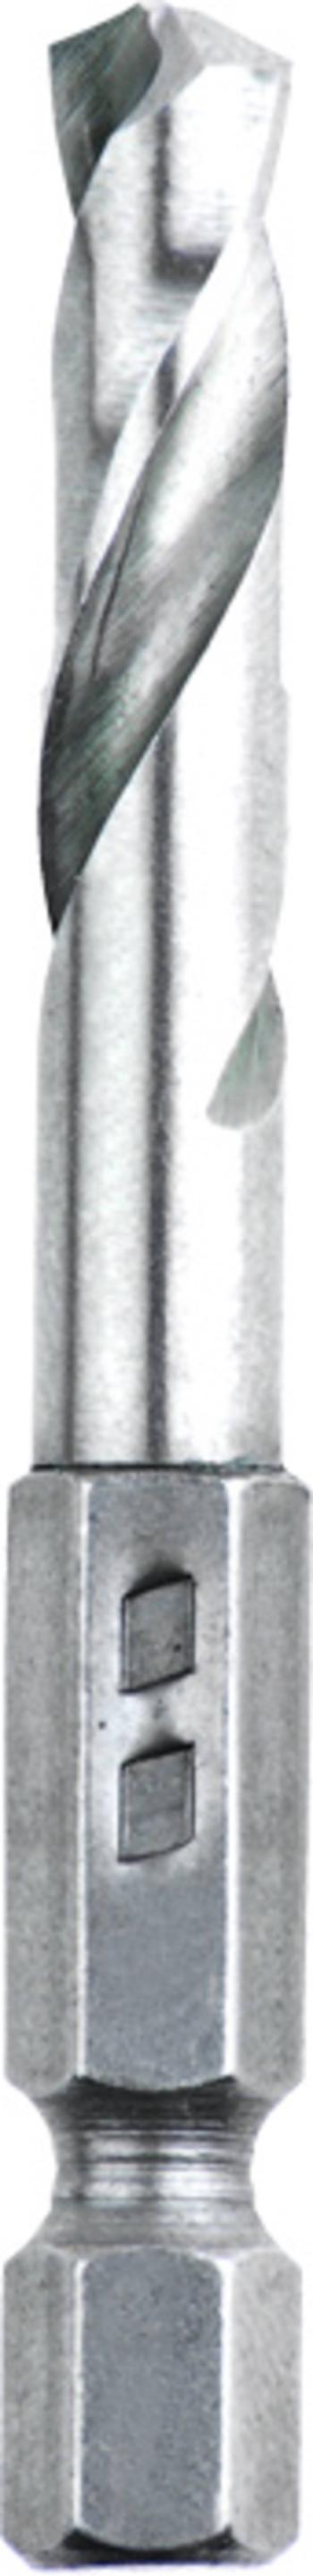 kwb 421106  kovový špirálový vrták 1 ks      1 ks